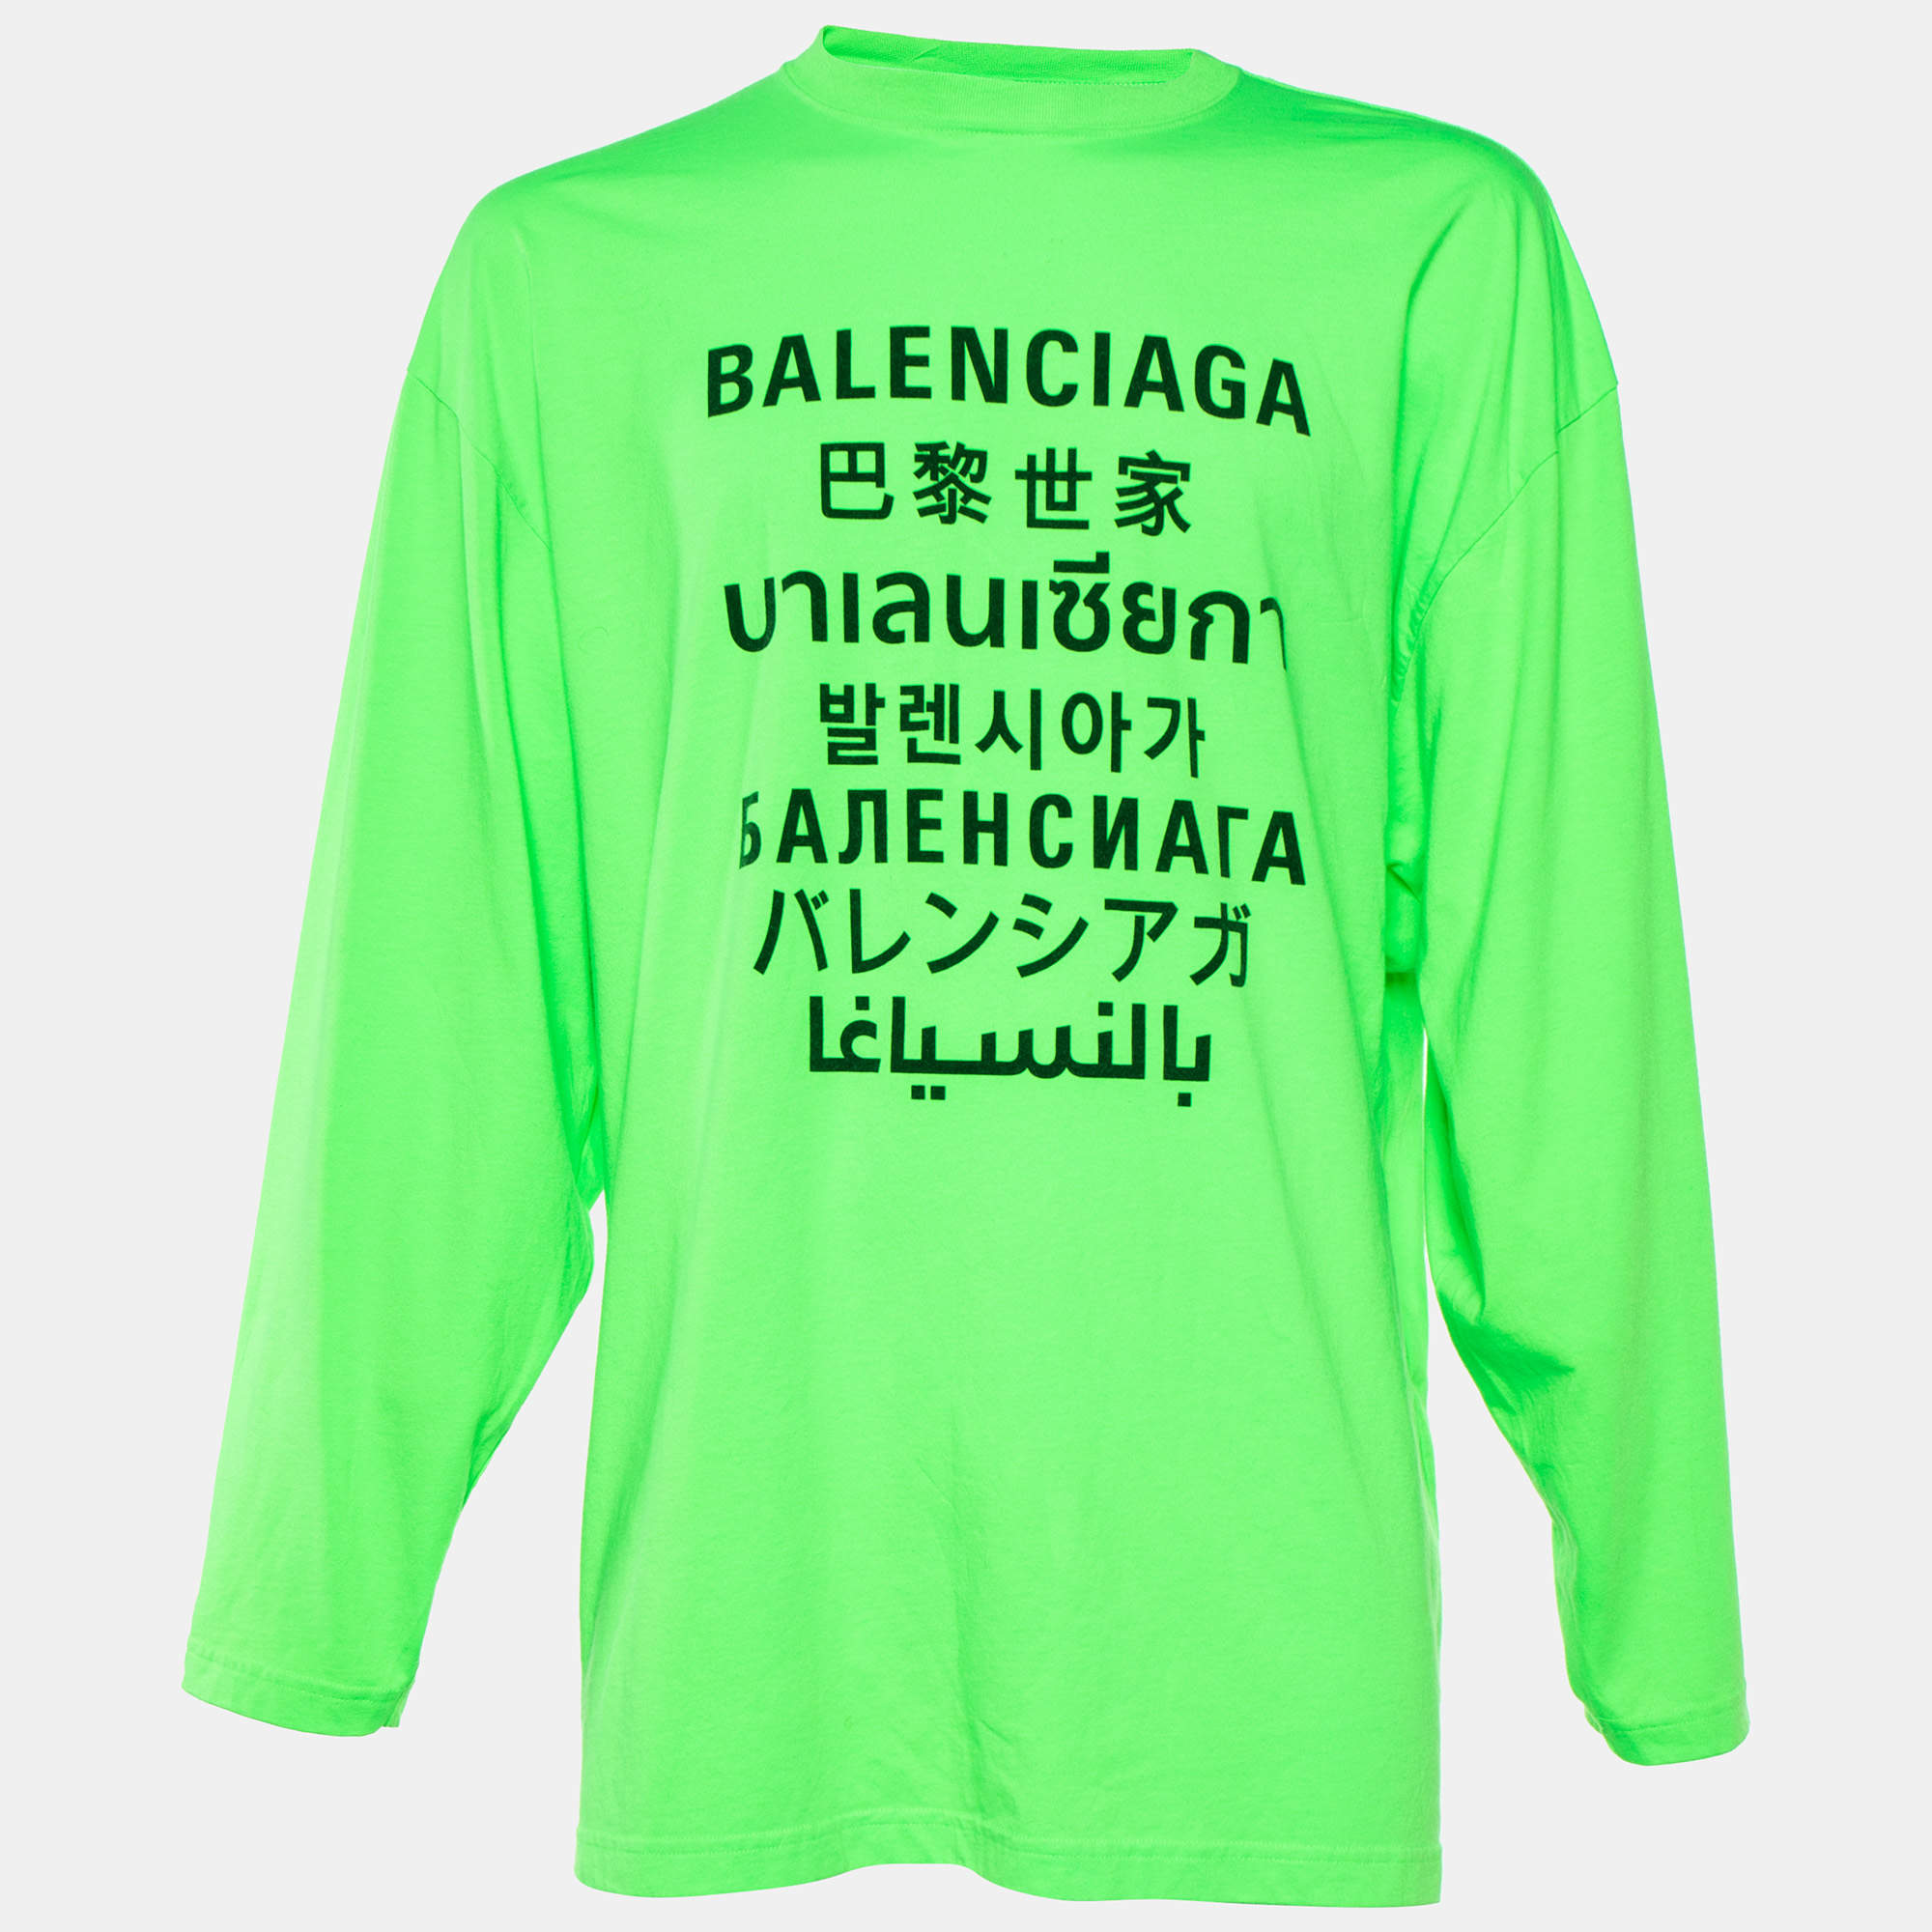 Chia sẻ với hơn 80 về balenciaga green shirt - cdgdbentre.edu.vn